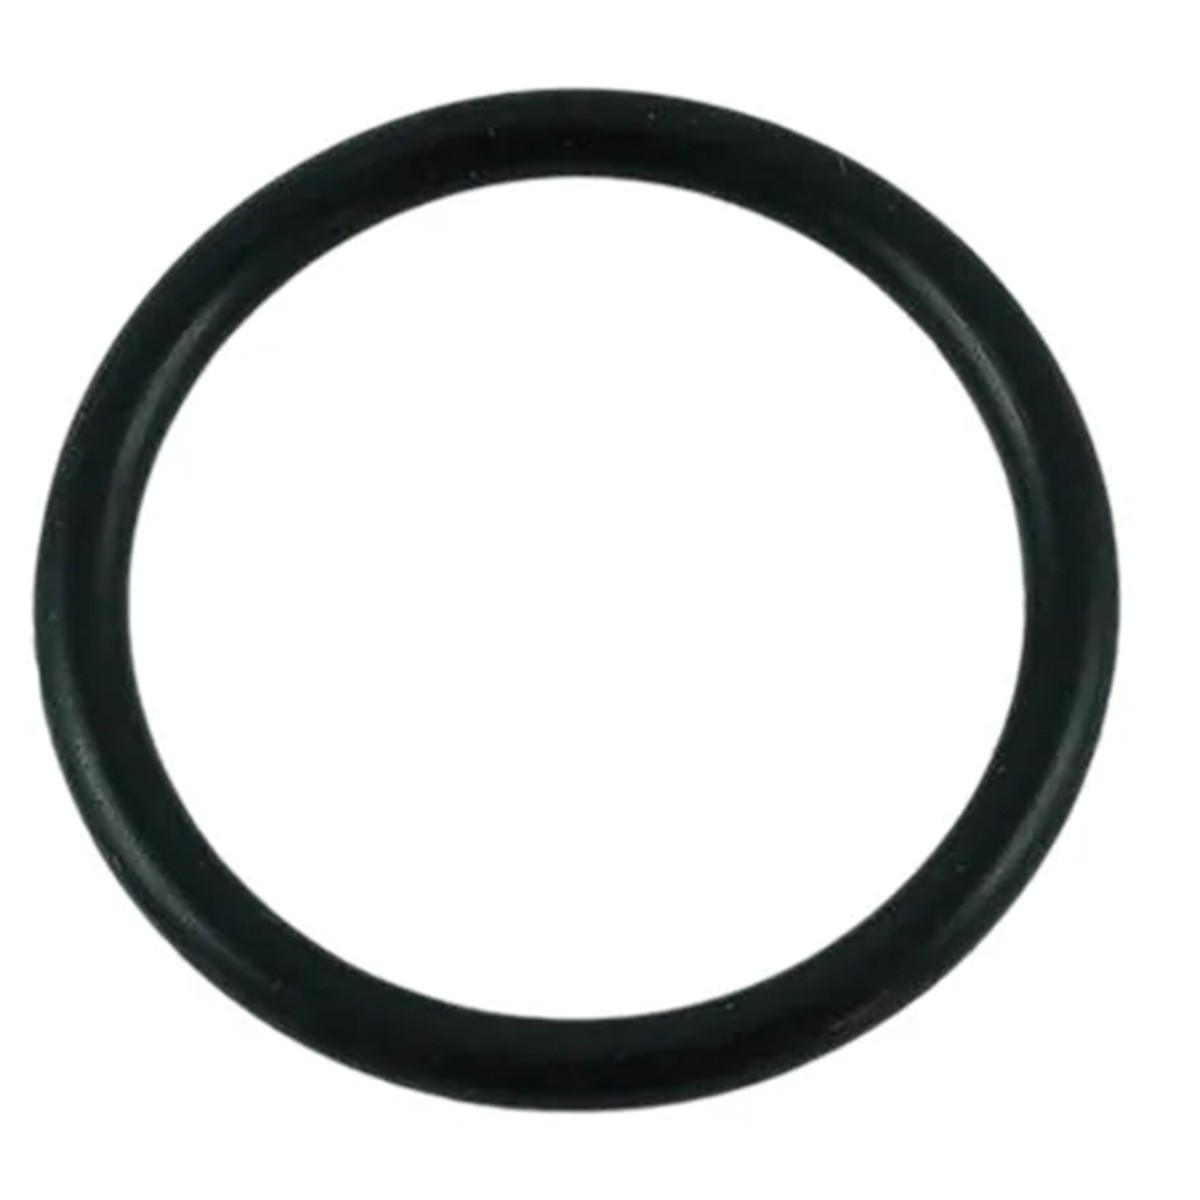 O-ring 21.80 x 2.40 / LS XJ25 / LS MT3.35 / LS MT3.40 / LS MT3.50 / LS MT3.60 / S801022010 / 40029209